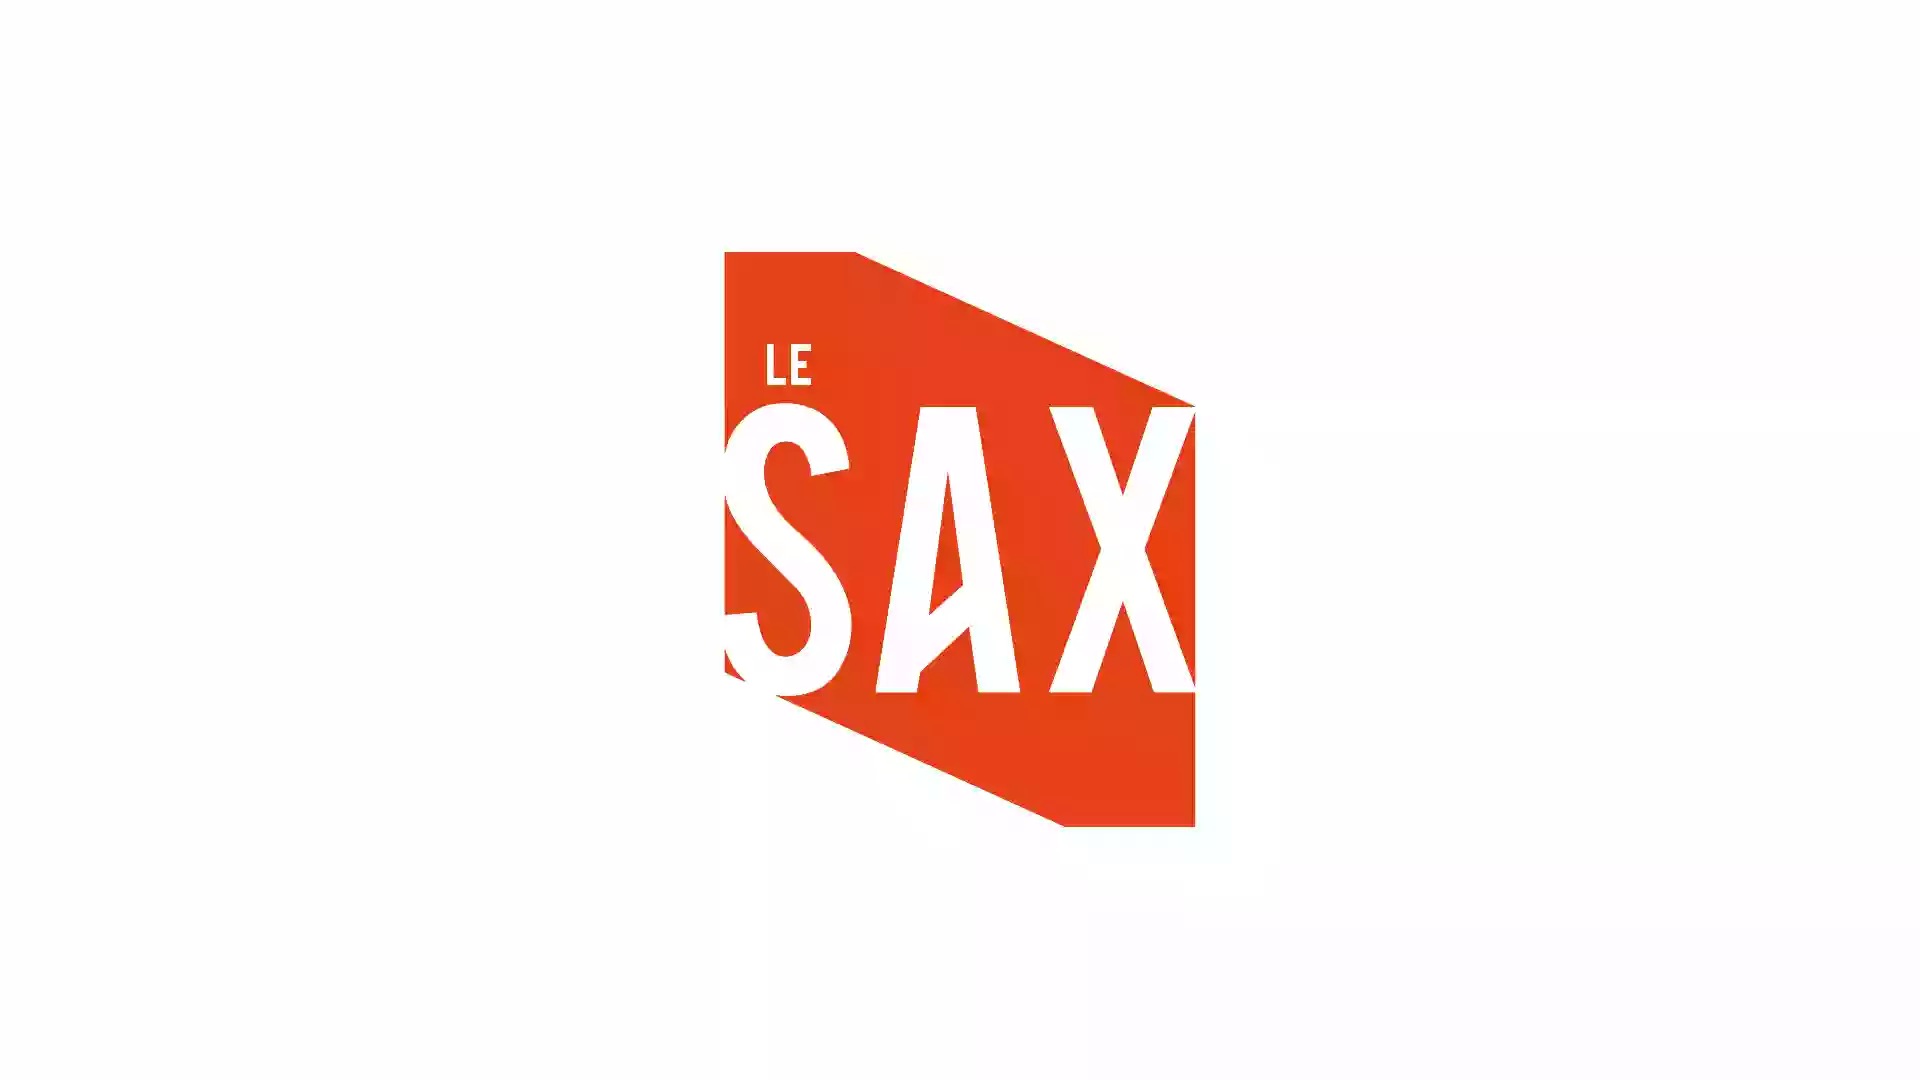 Le Sax